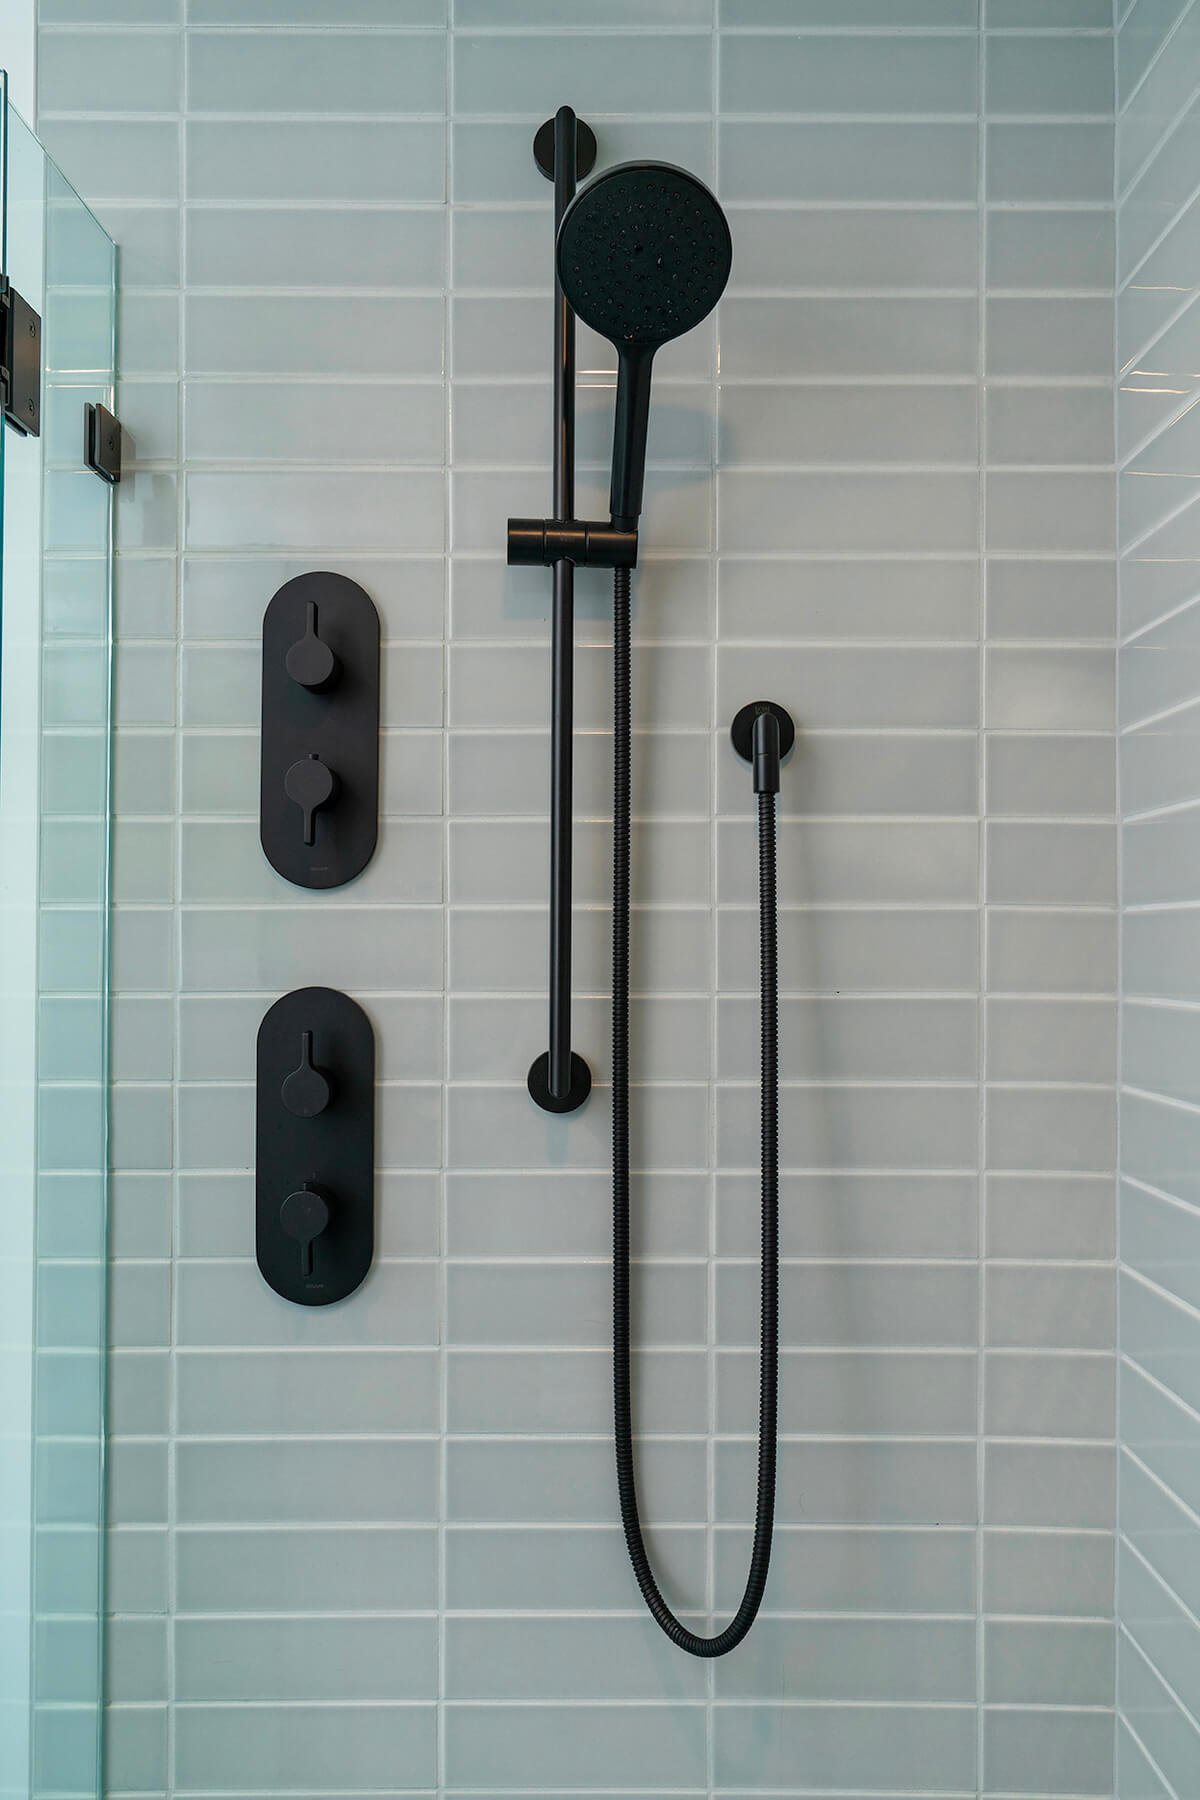 Gilman Berkeley Bathroom Remodel - Shower Fixtures.jpg